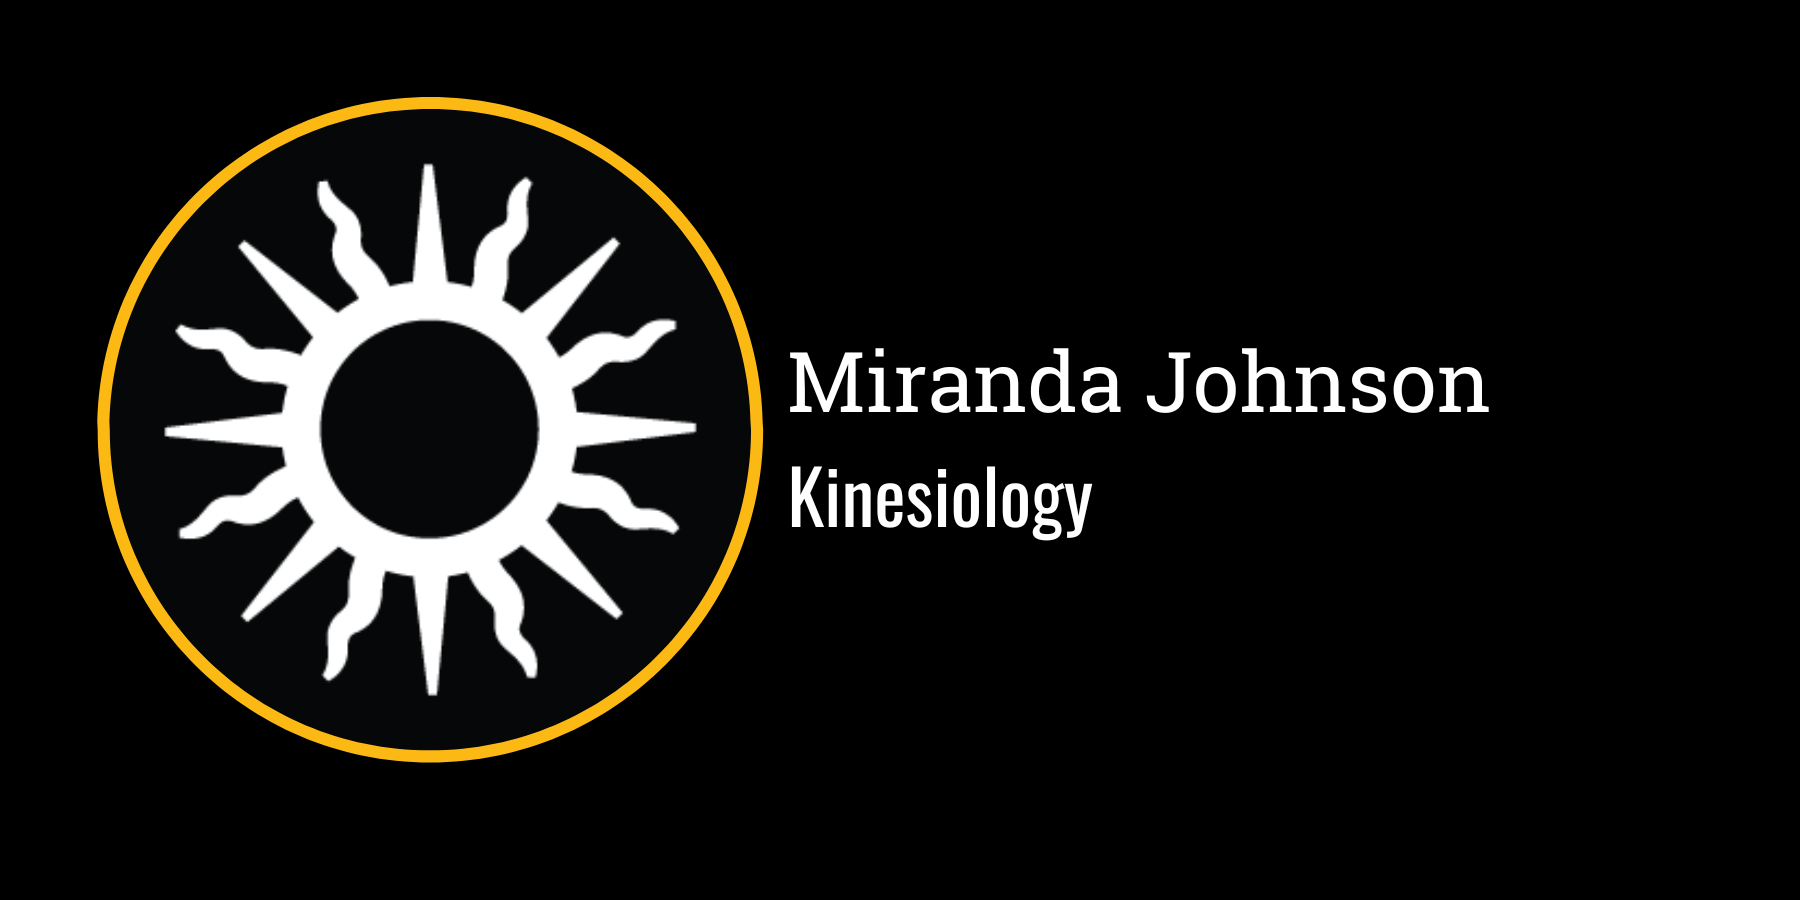 Miranda Johnson
Kinesiology
